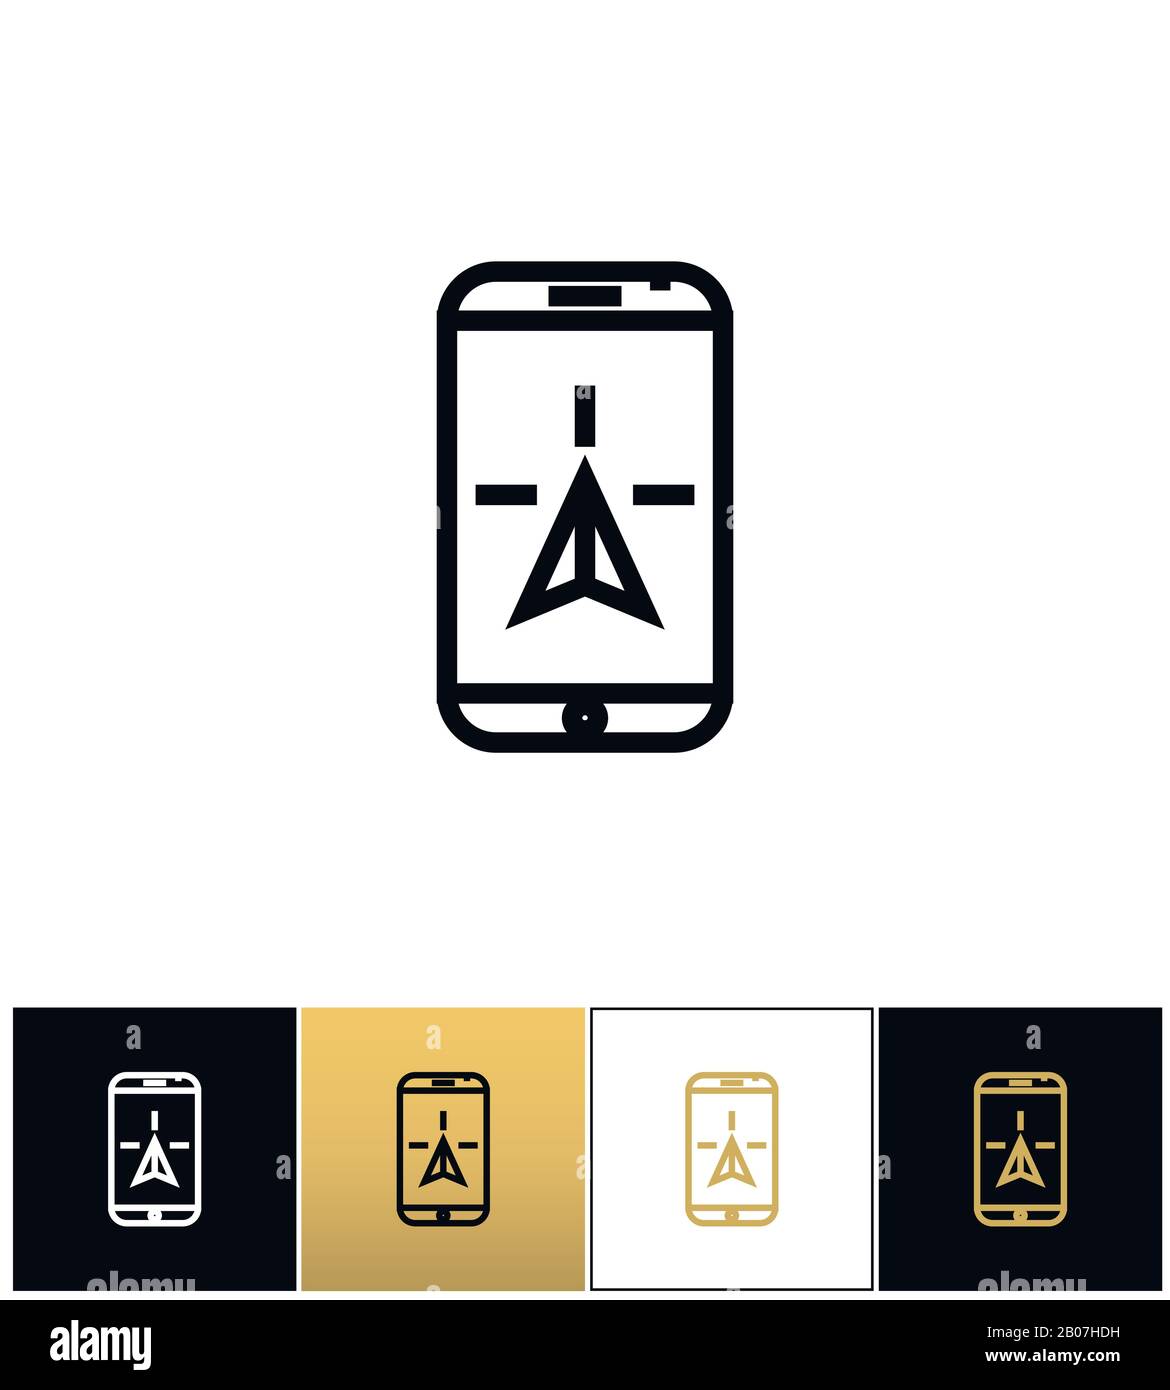 Icona del vettore di geolocalizzazione gps mobile di viaggio o di navigazione telefonica. Navigazione telefonica o GPS mobile di viaggio geolocalizzazione pittogramma su sfondo nero, bianco e oro Illustrazione Vettoriale